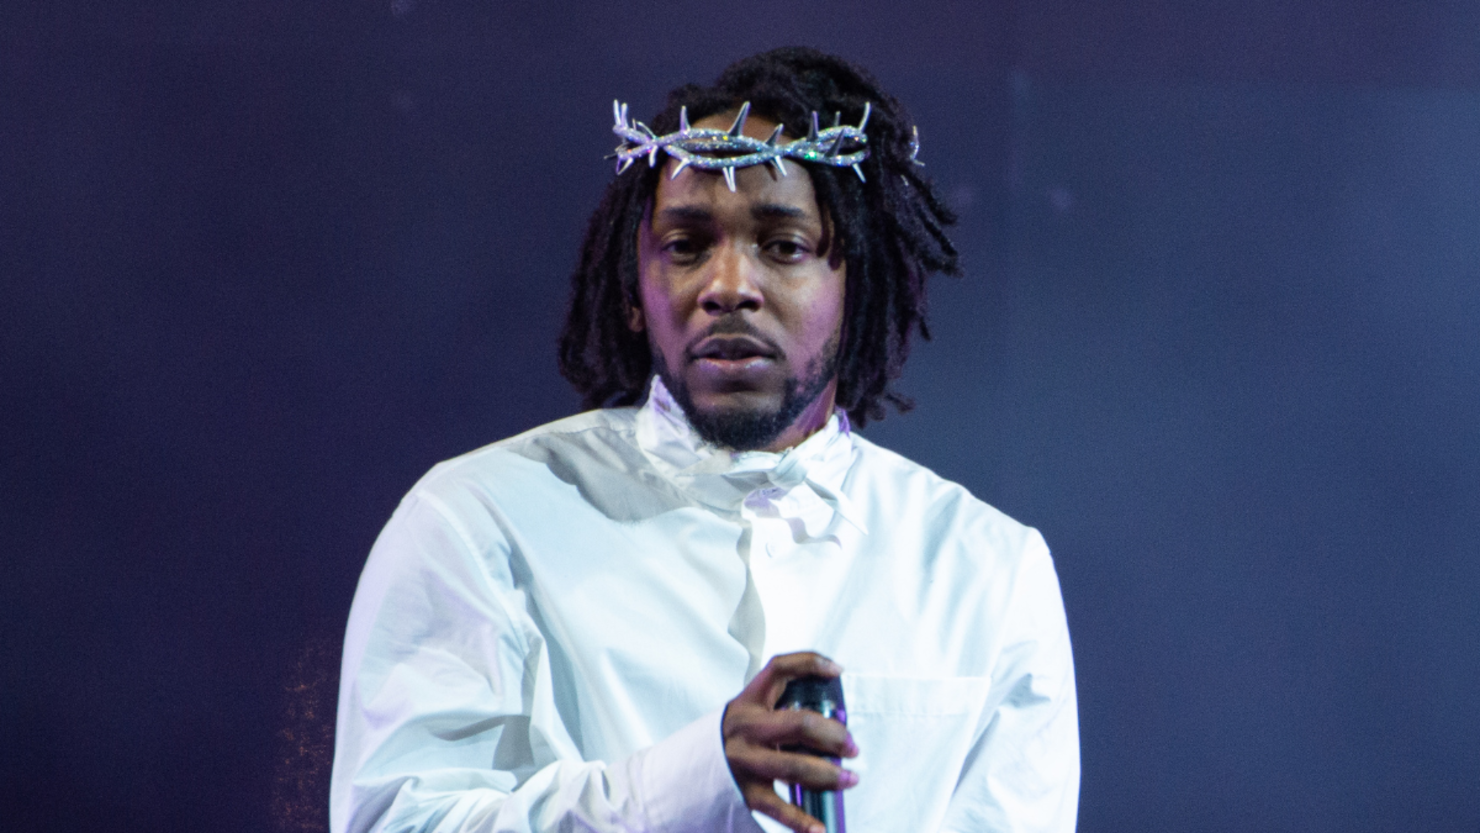 Kendrick Lamar review – unique star puts on show worthy of his talents, Kendrick  Lamar